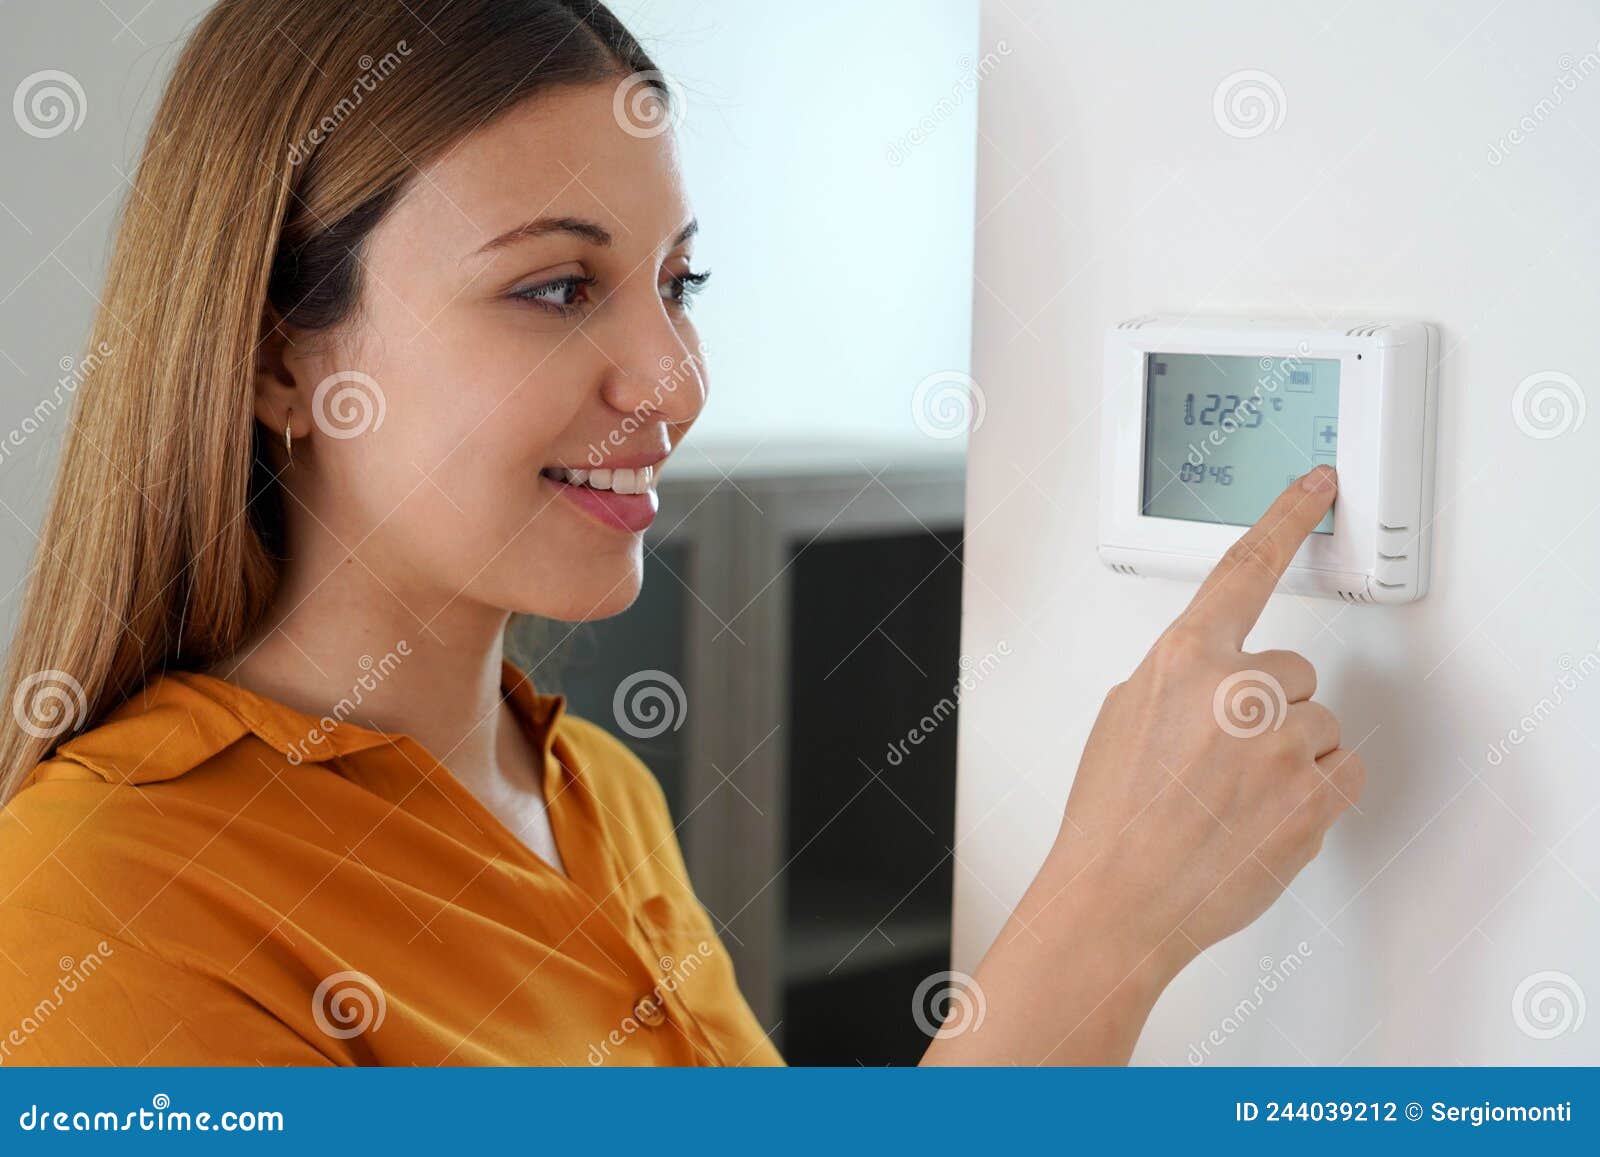 Termostato programable calefacción: ahorra energía